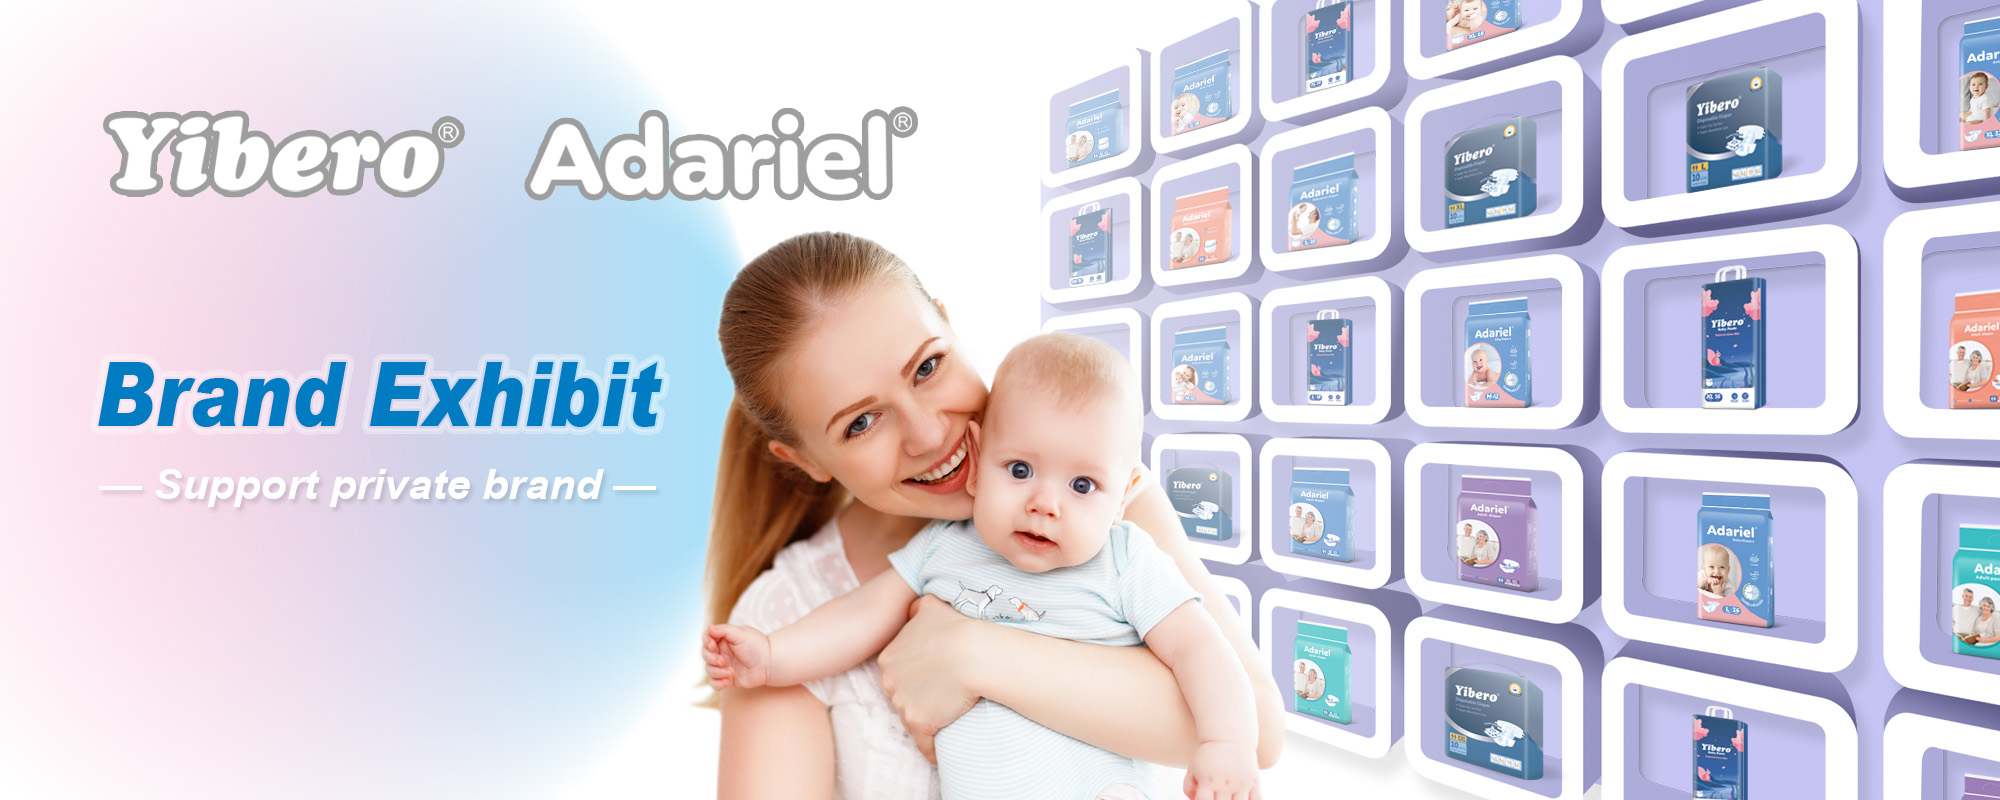 बेबी डायपर/वयस्क डायपर/वेट वाइप्स/सेनेटरी नैपकिन/अंडरपैड के नए ब्रांड YIBERO Adariel का स्वामित्व